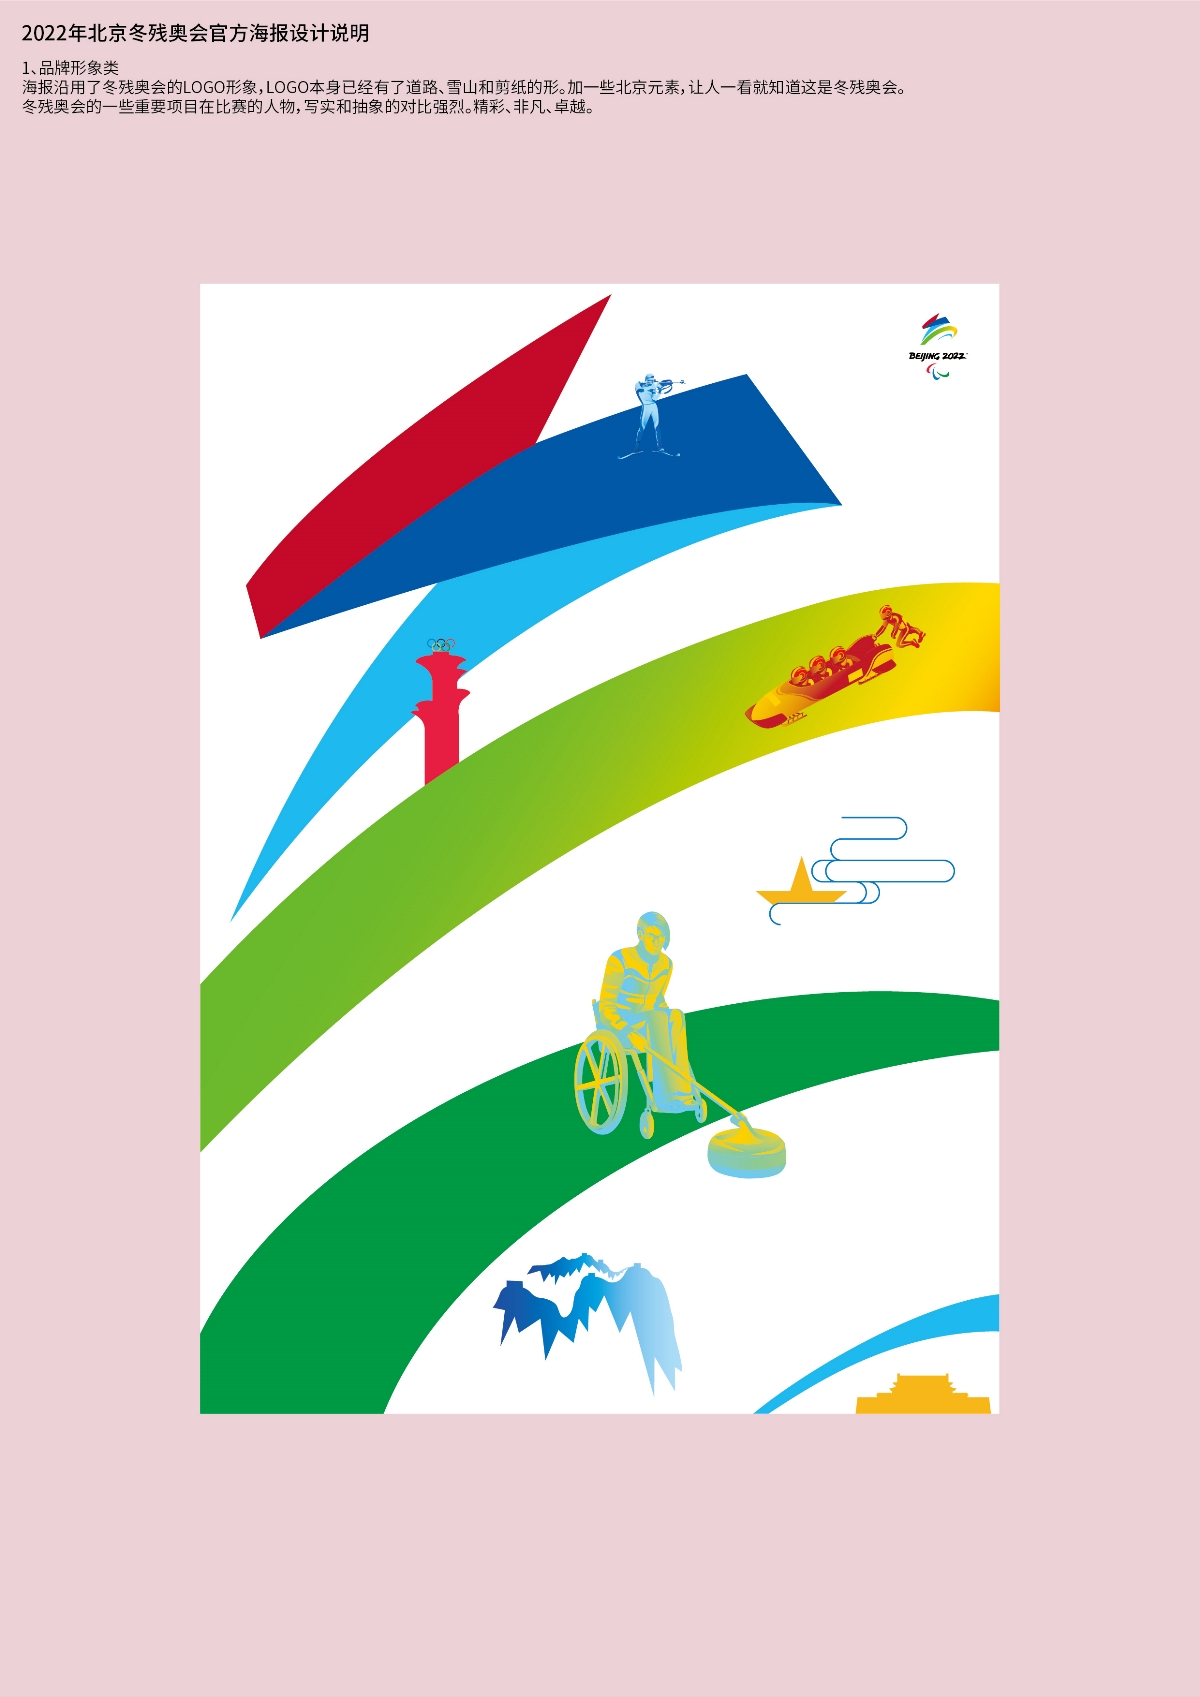 2022年北京冬奥会和冬残奥会官方海报